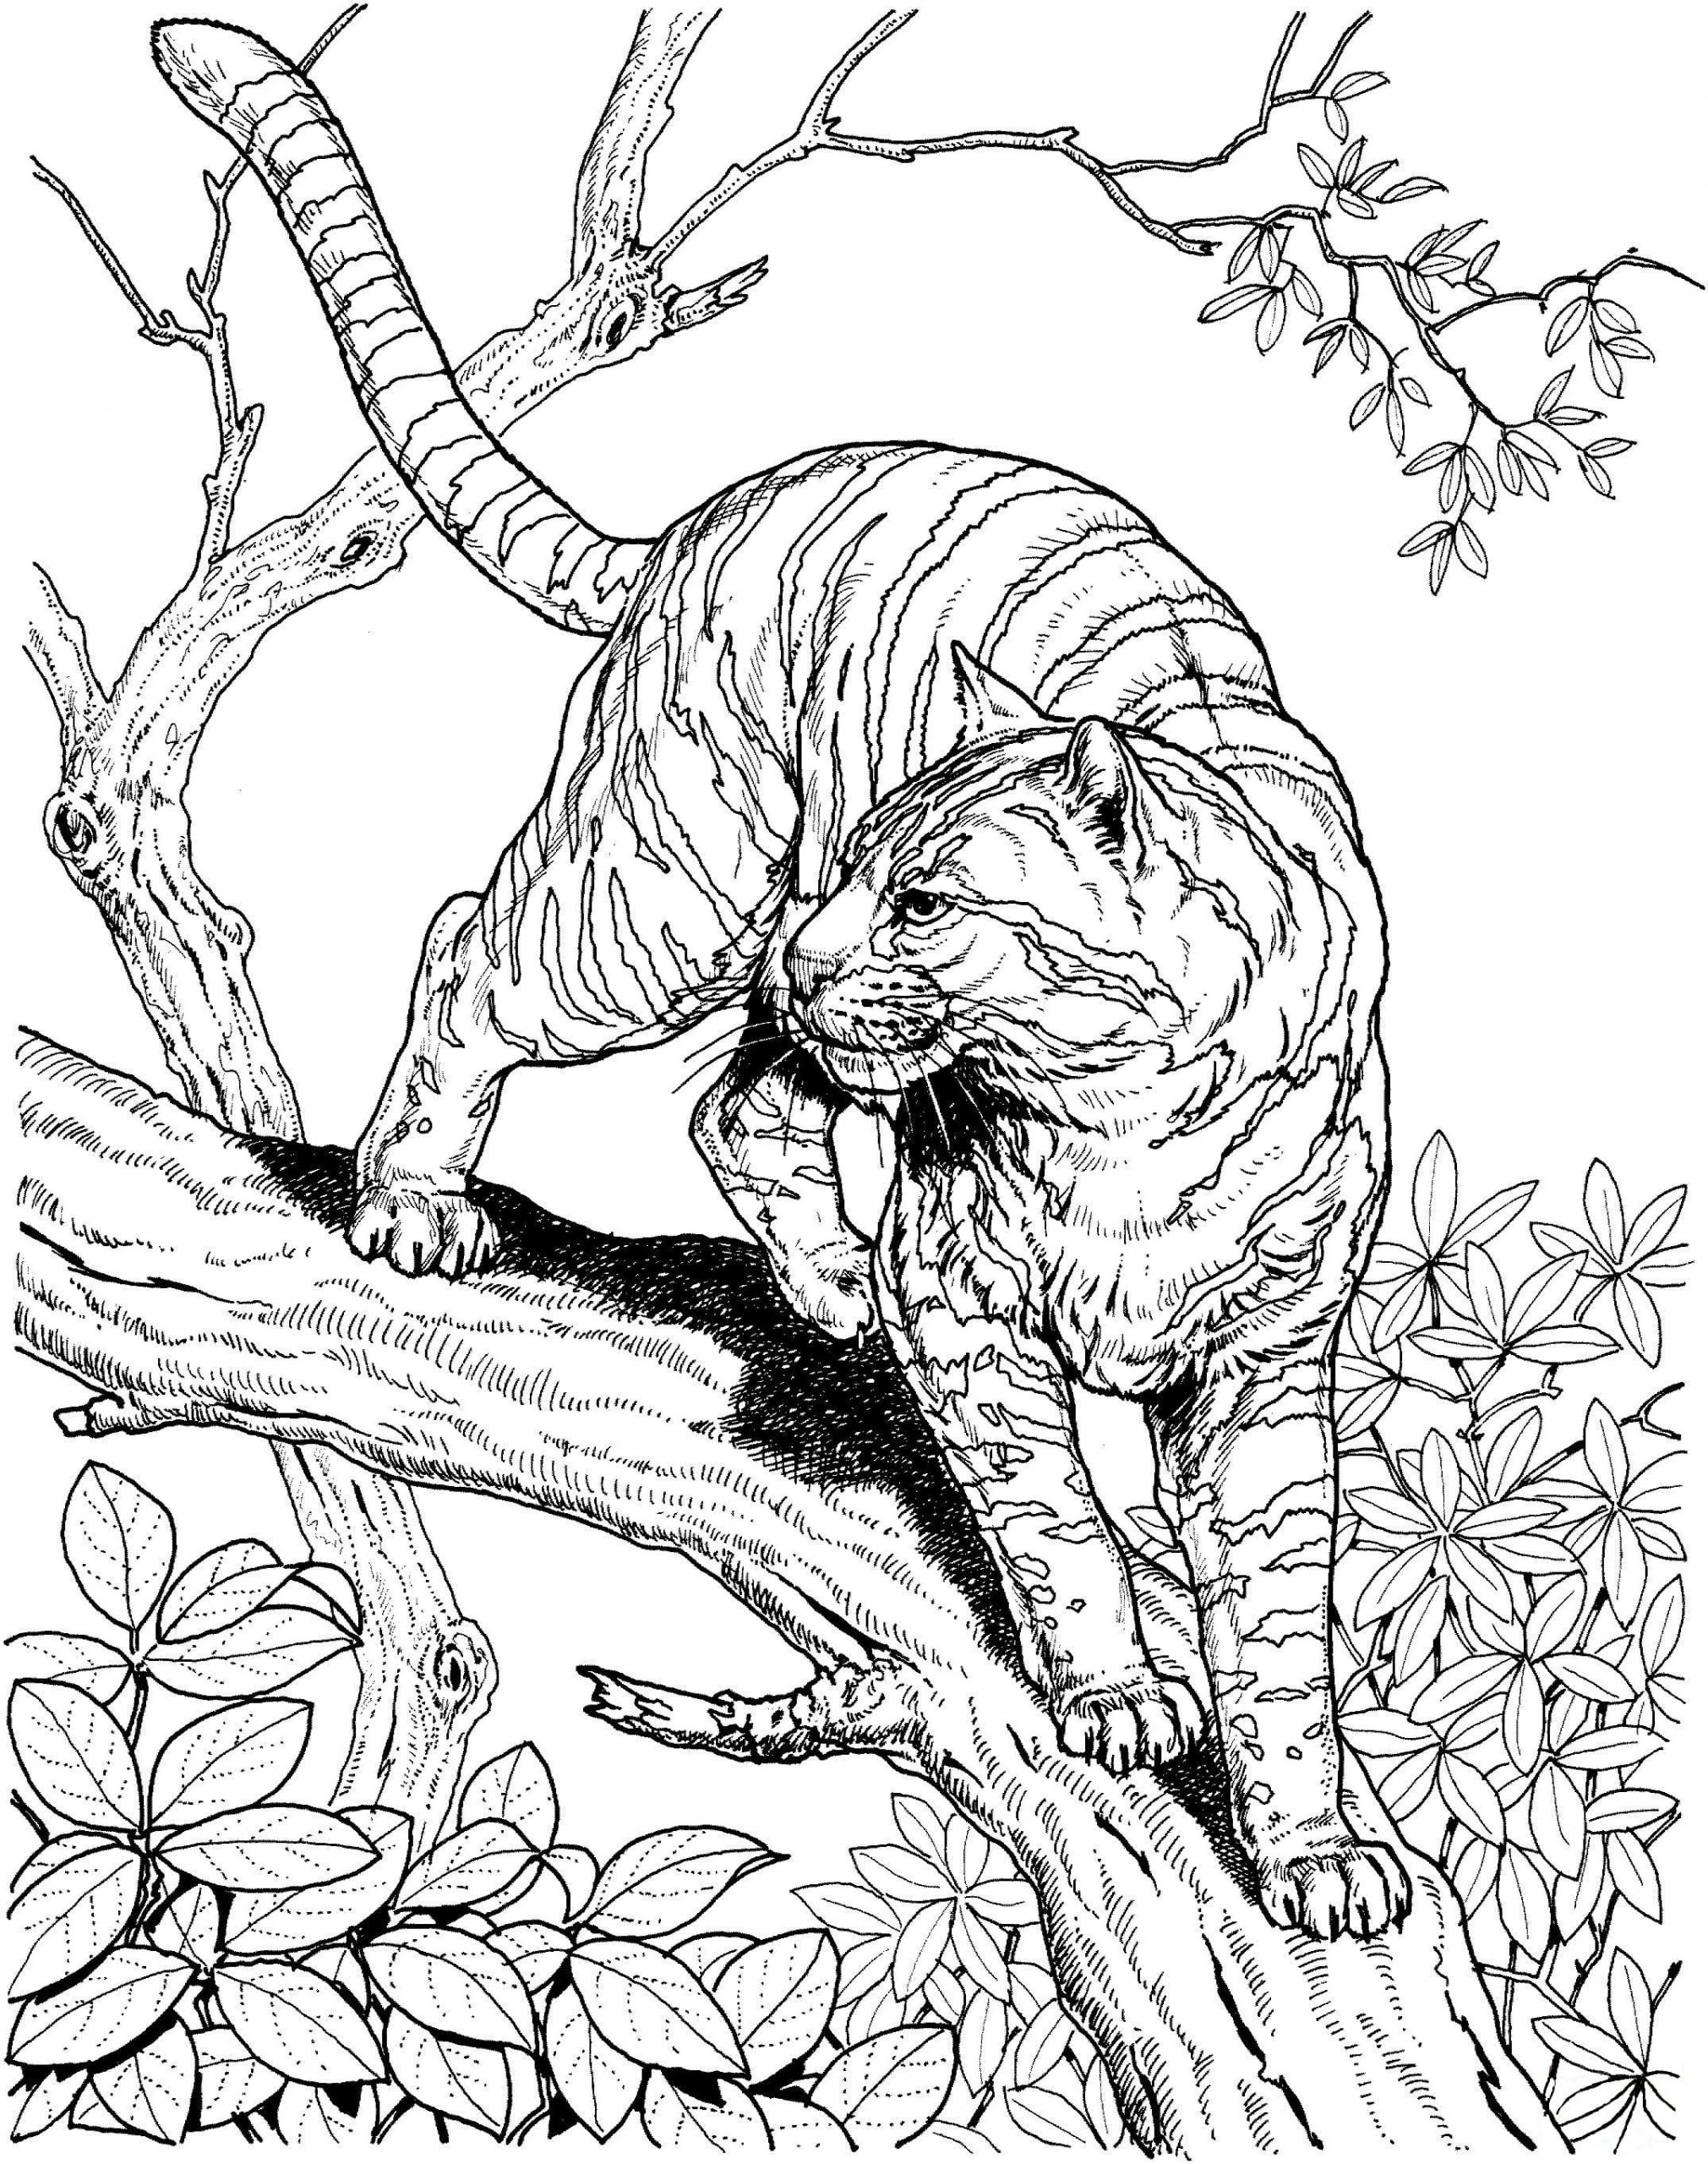 Jako všechny kočky je gepard obratný ve šplhání po stromech. omalovánka